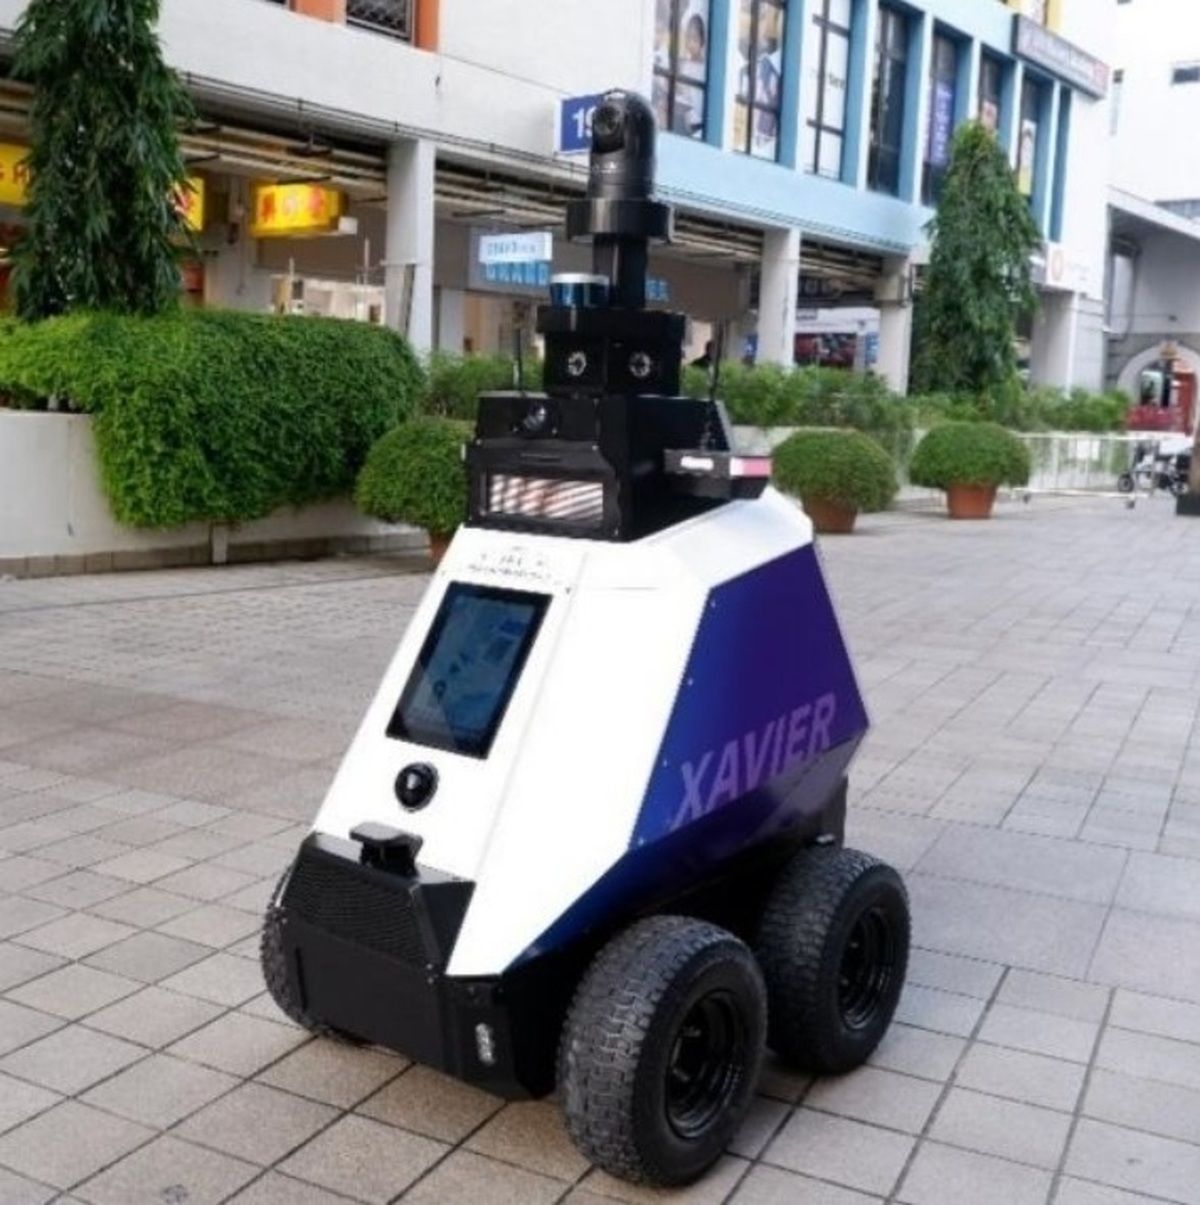  یک ربات خودران برای گشت زنی و بررسی مناطق عمومی با تردد زیاد برای افزایش سلامت و ایمنی عمومی استفاده می‌شود.